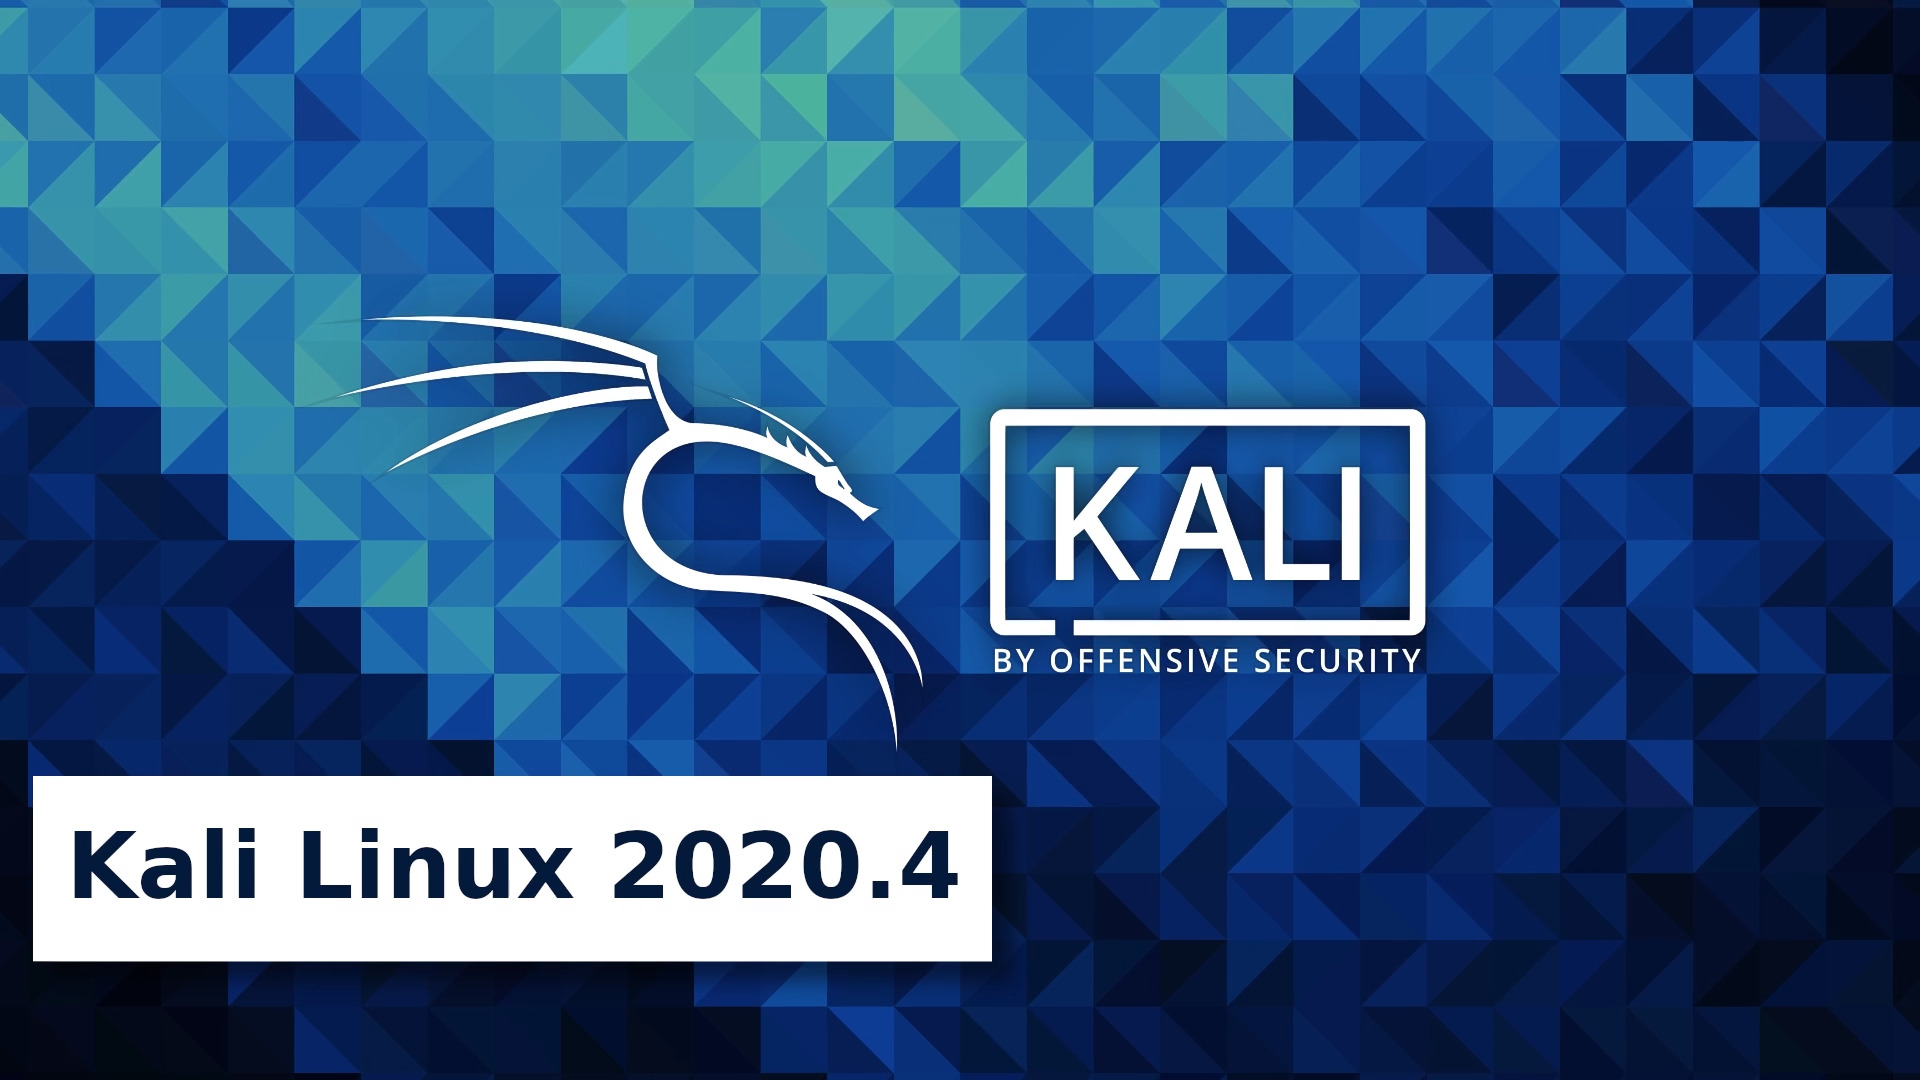 Kali Linux 2020.4 preview